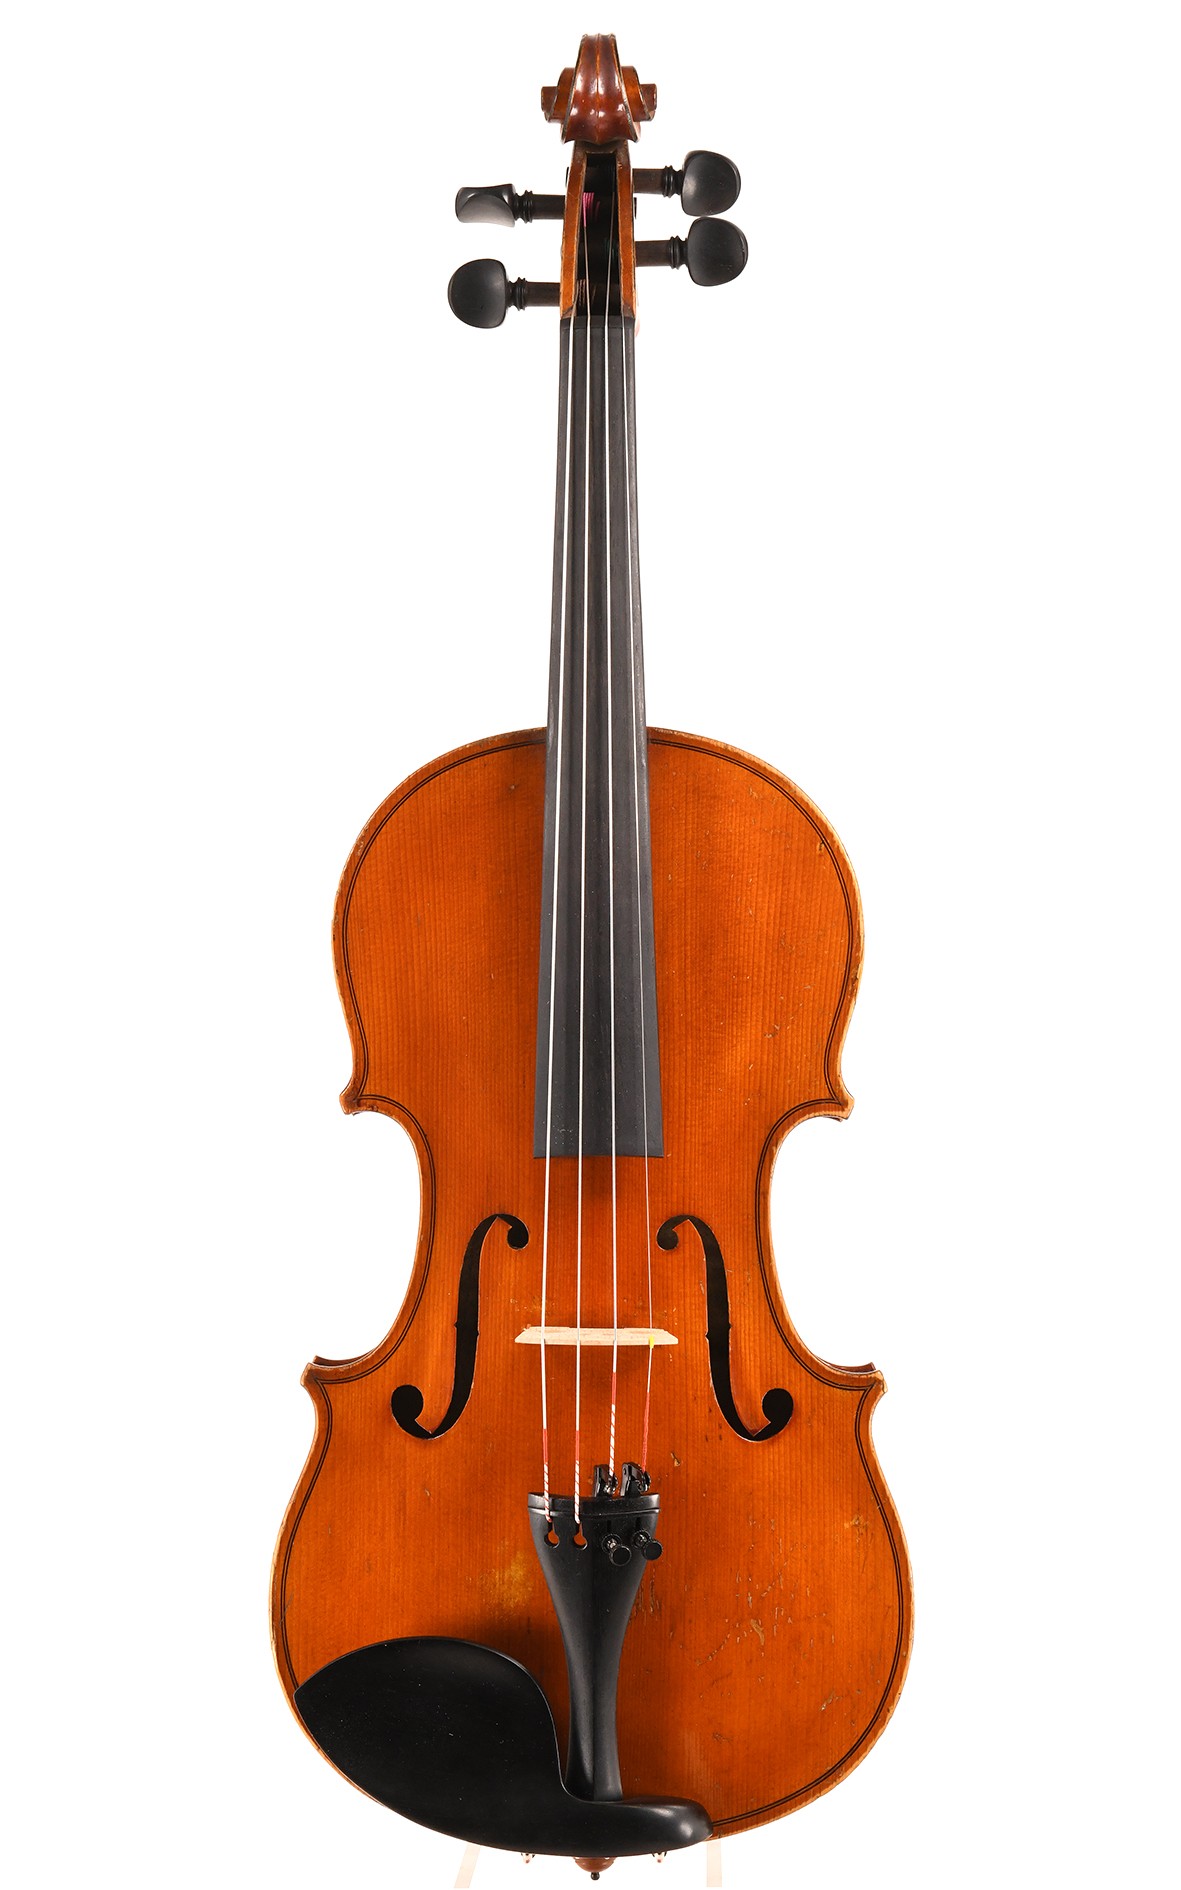 Schöne, alte französische Mirecourter Violine circa 1930